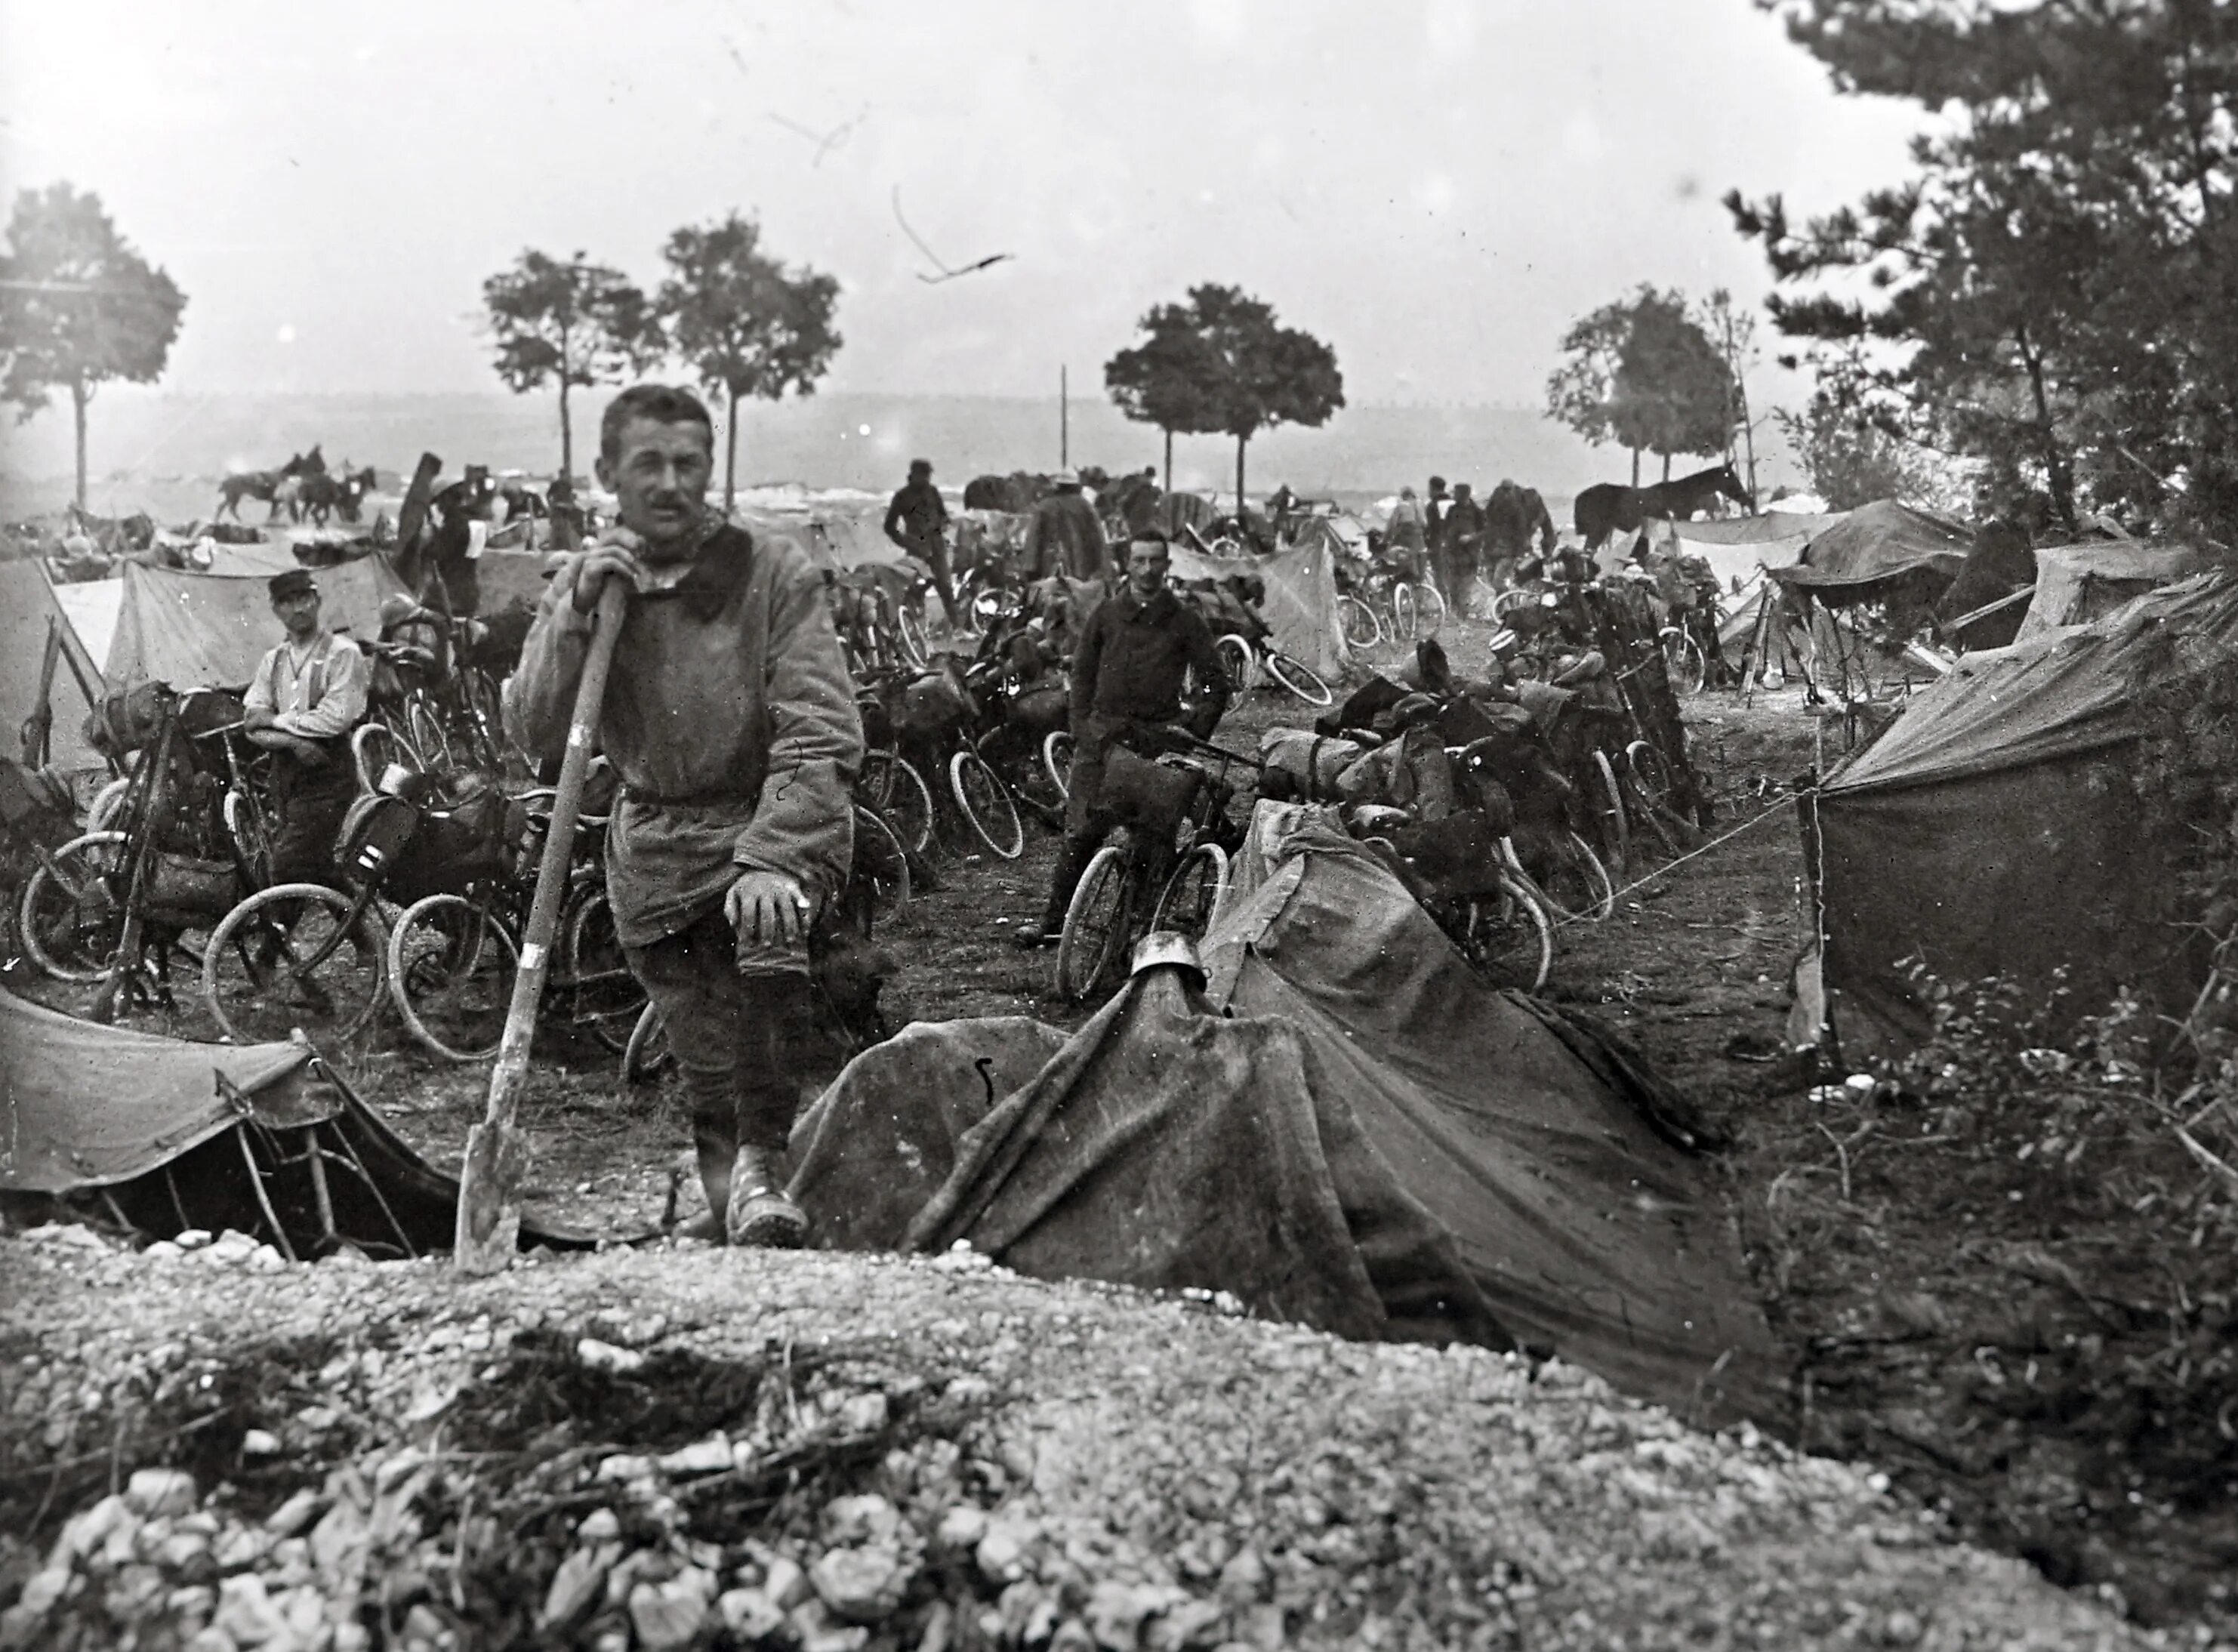 Как жили в первую мировую войну. Франция 1915. Французские солдаты 1915 года. Фронт Франция ПМВ 1915.